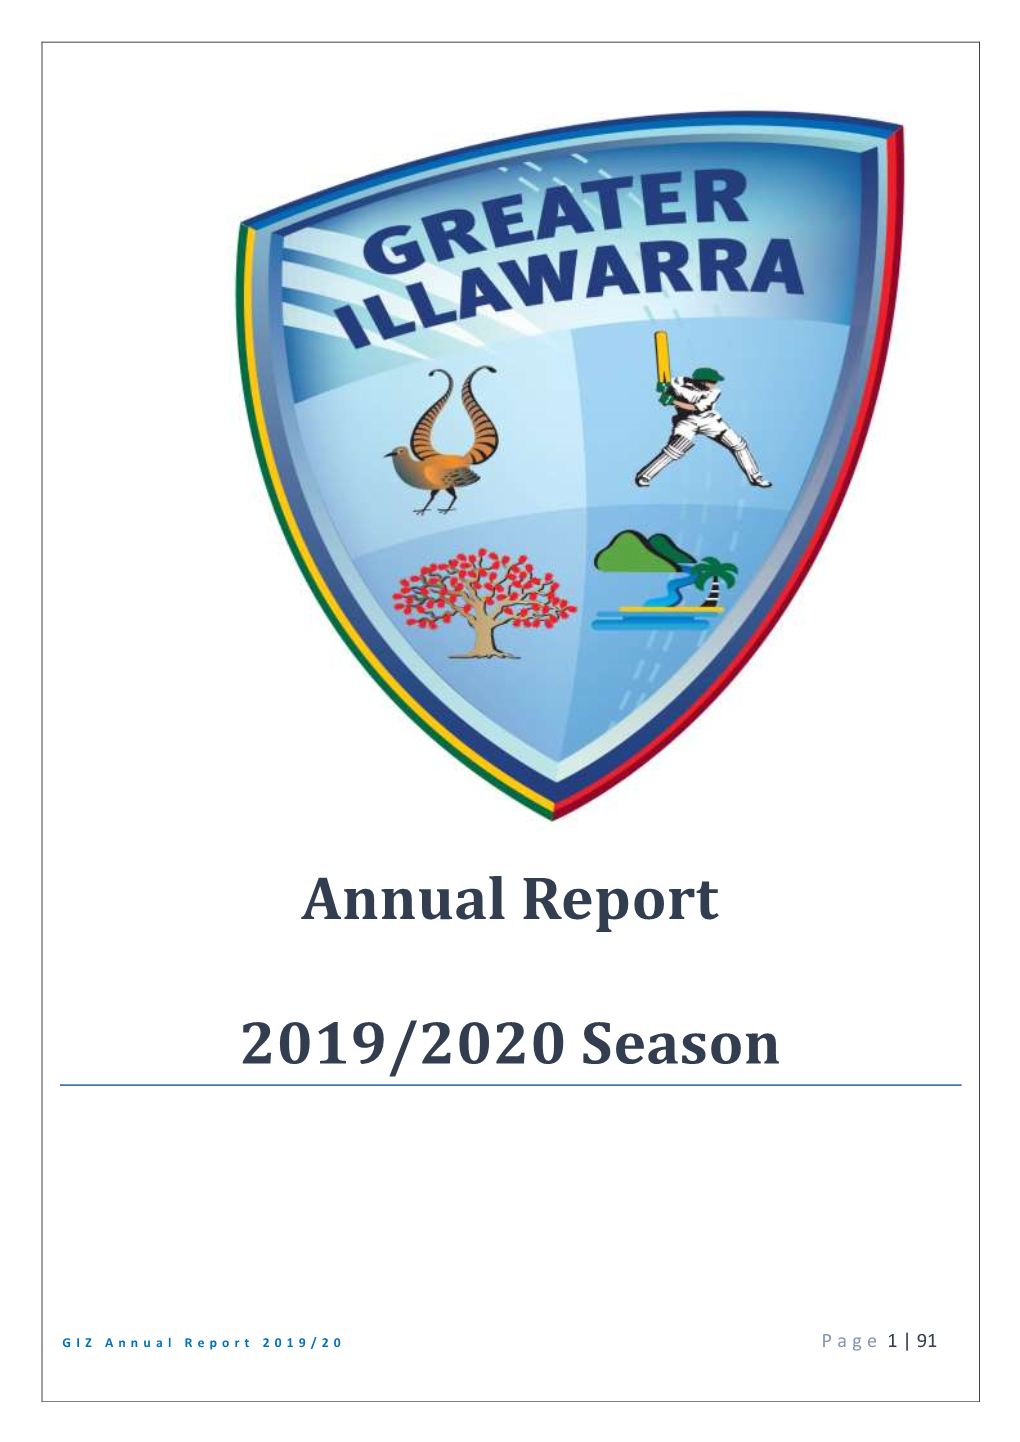 Annual Report 2019/2020 Season